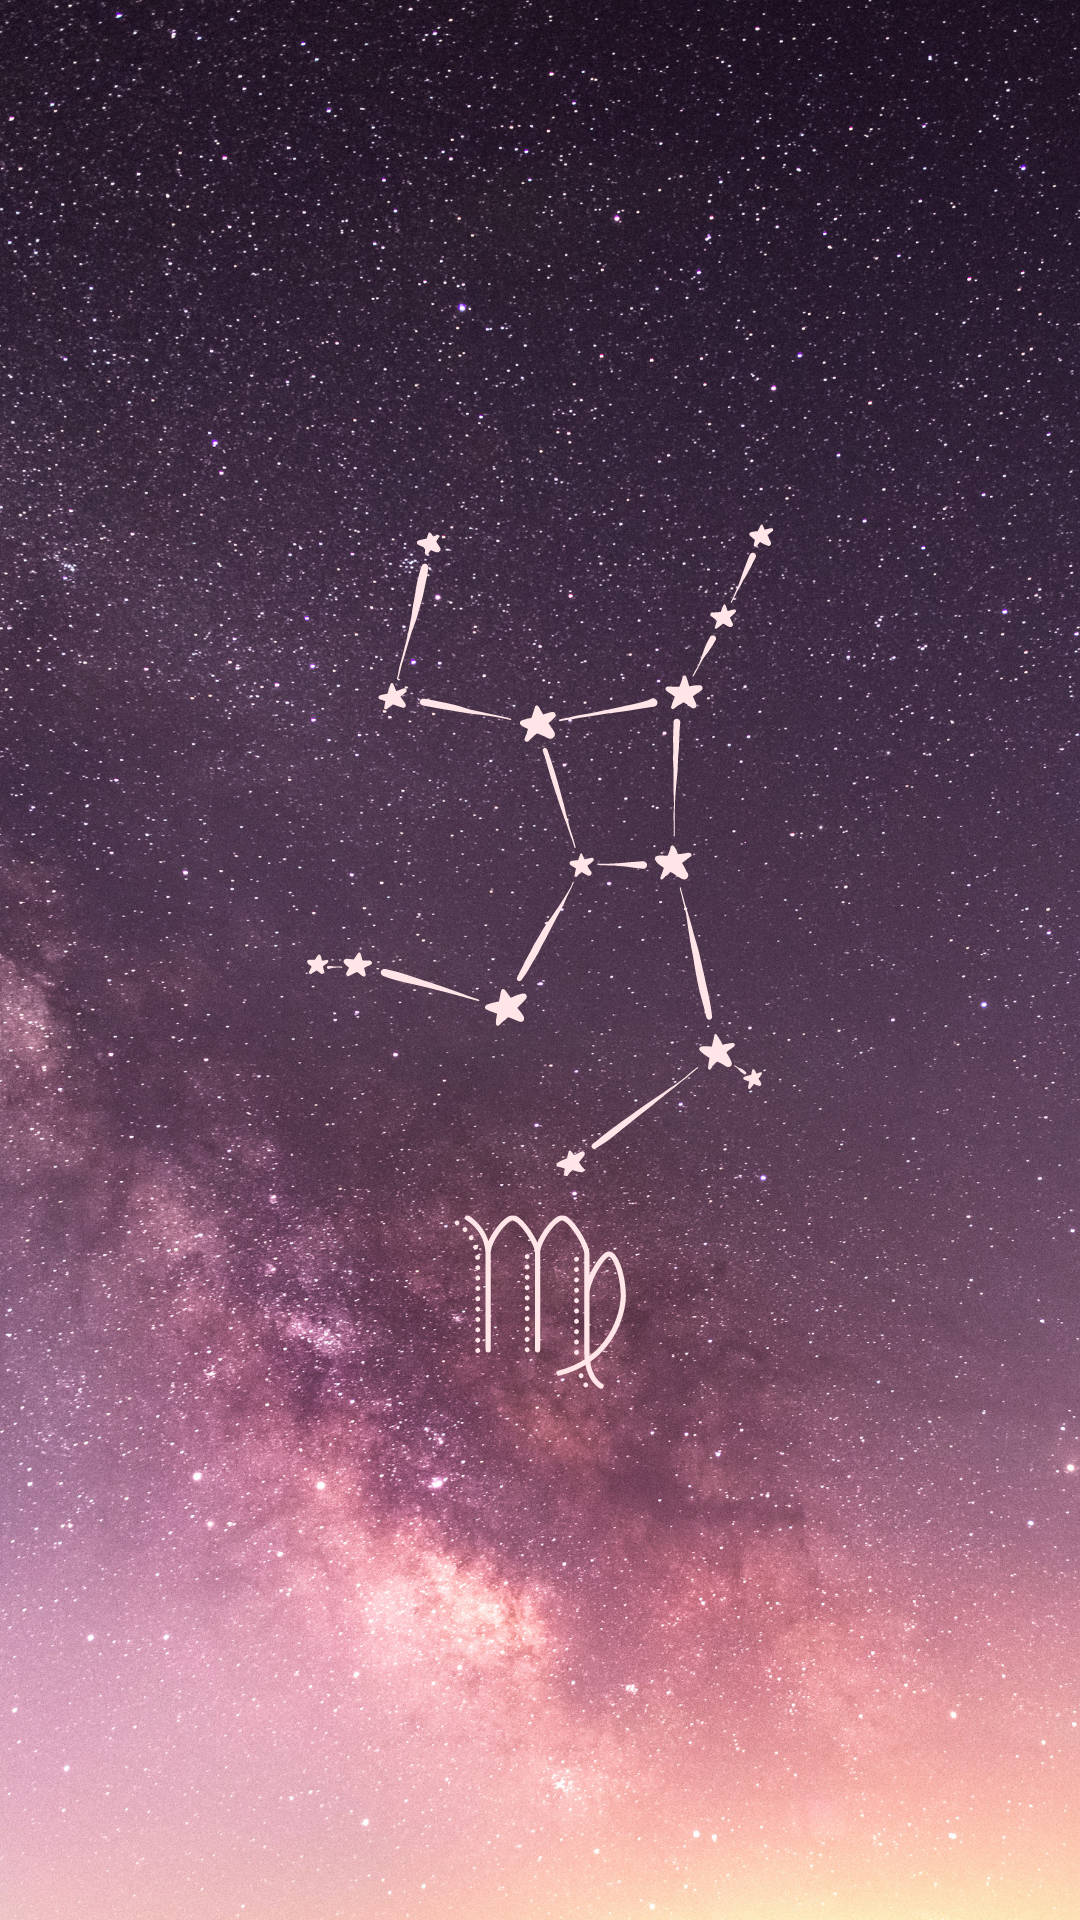 Virgo Zodiac Constellation